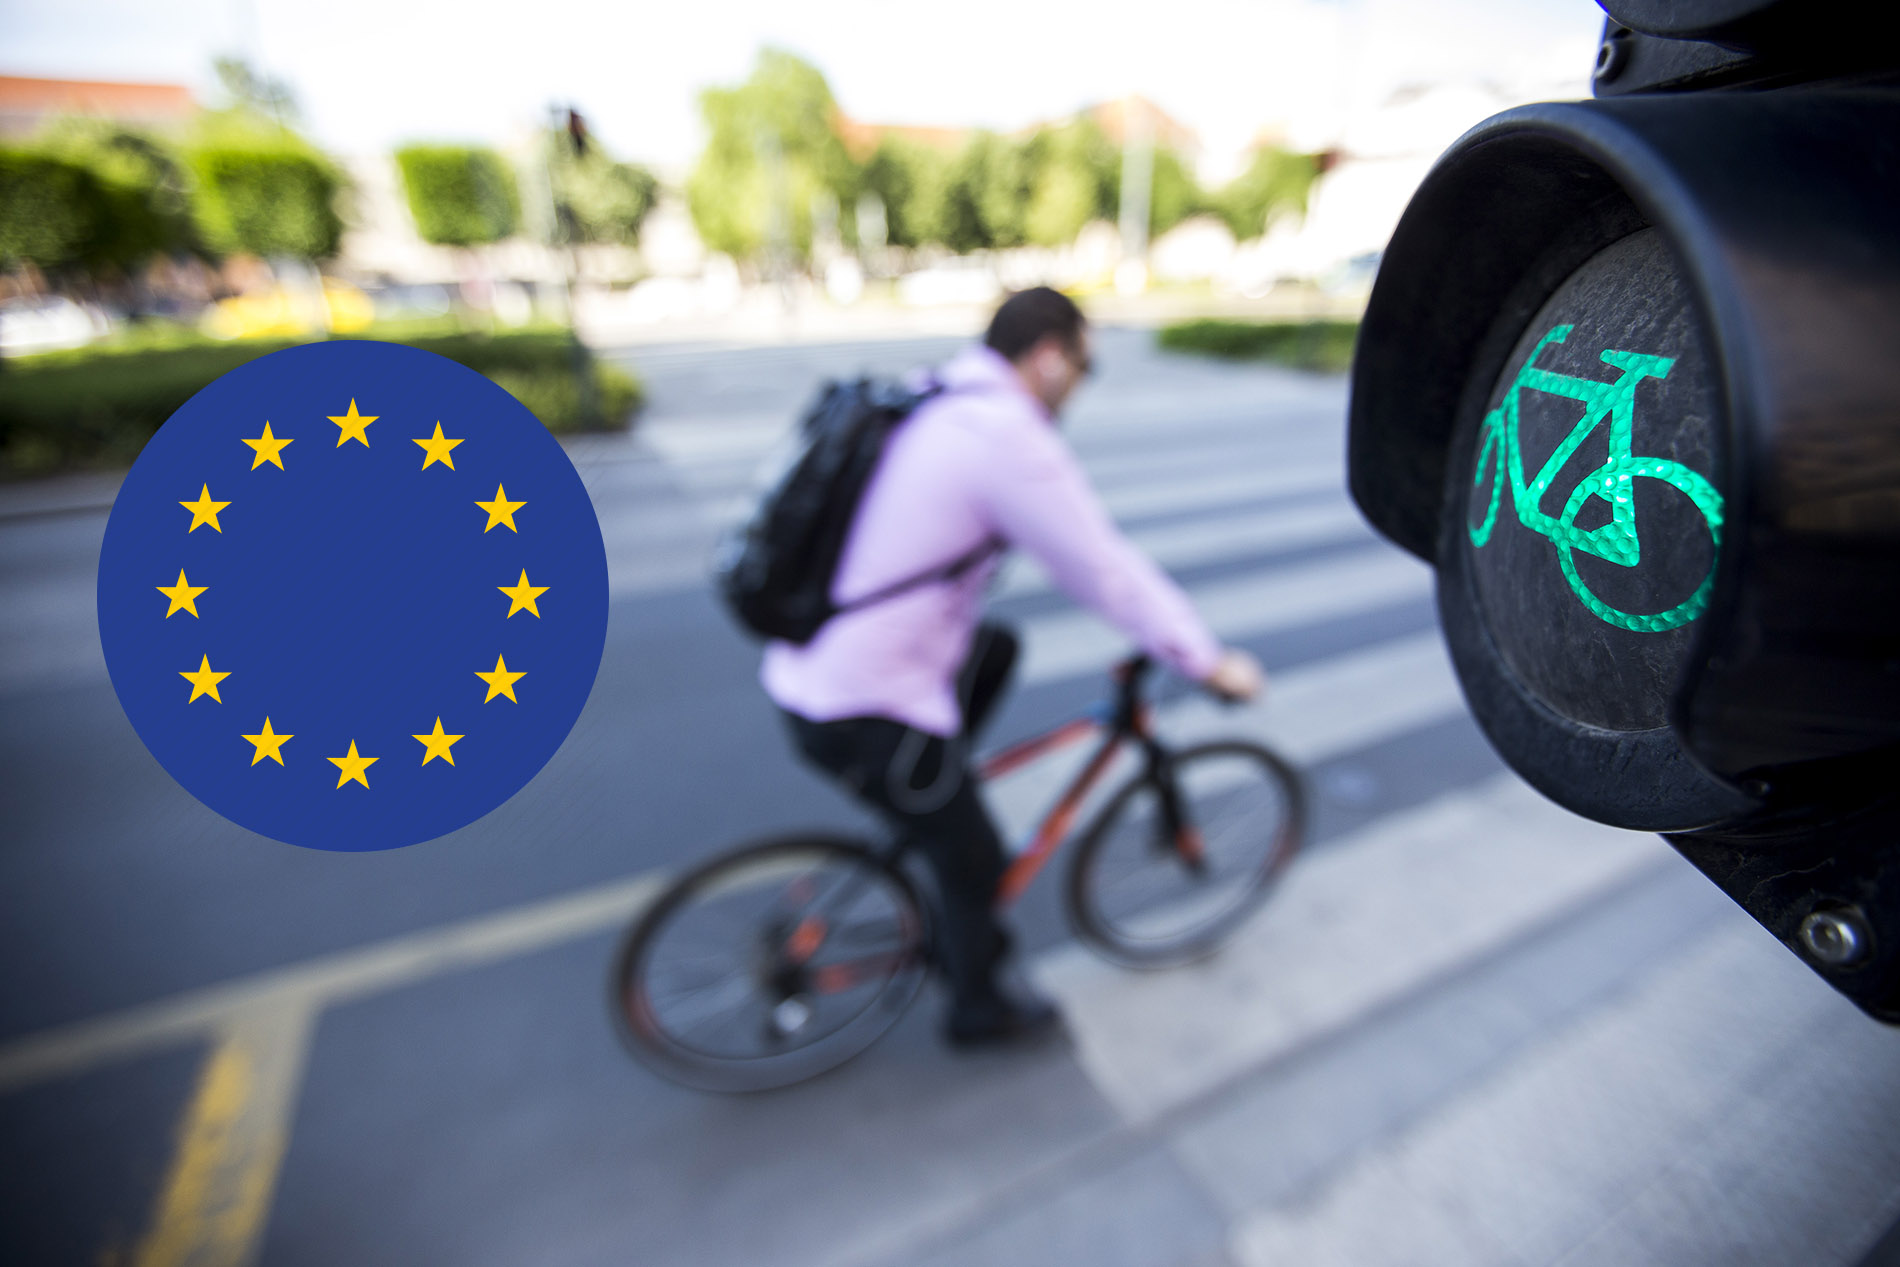 Megkérdeztük az Európai Parlament képviselőjelöltjeit, mit tennének a kerékpározásért